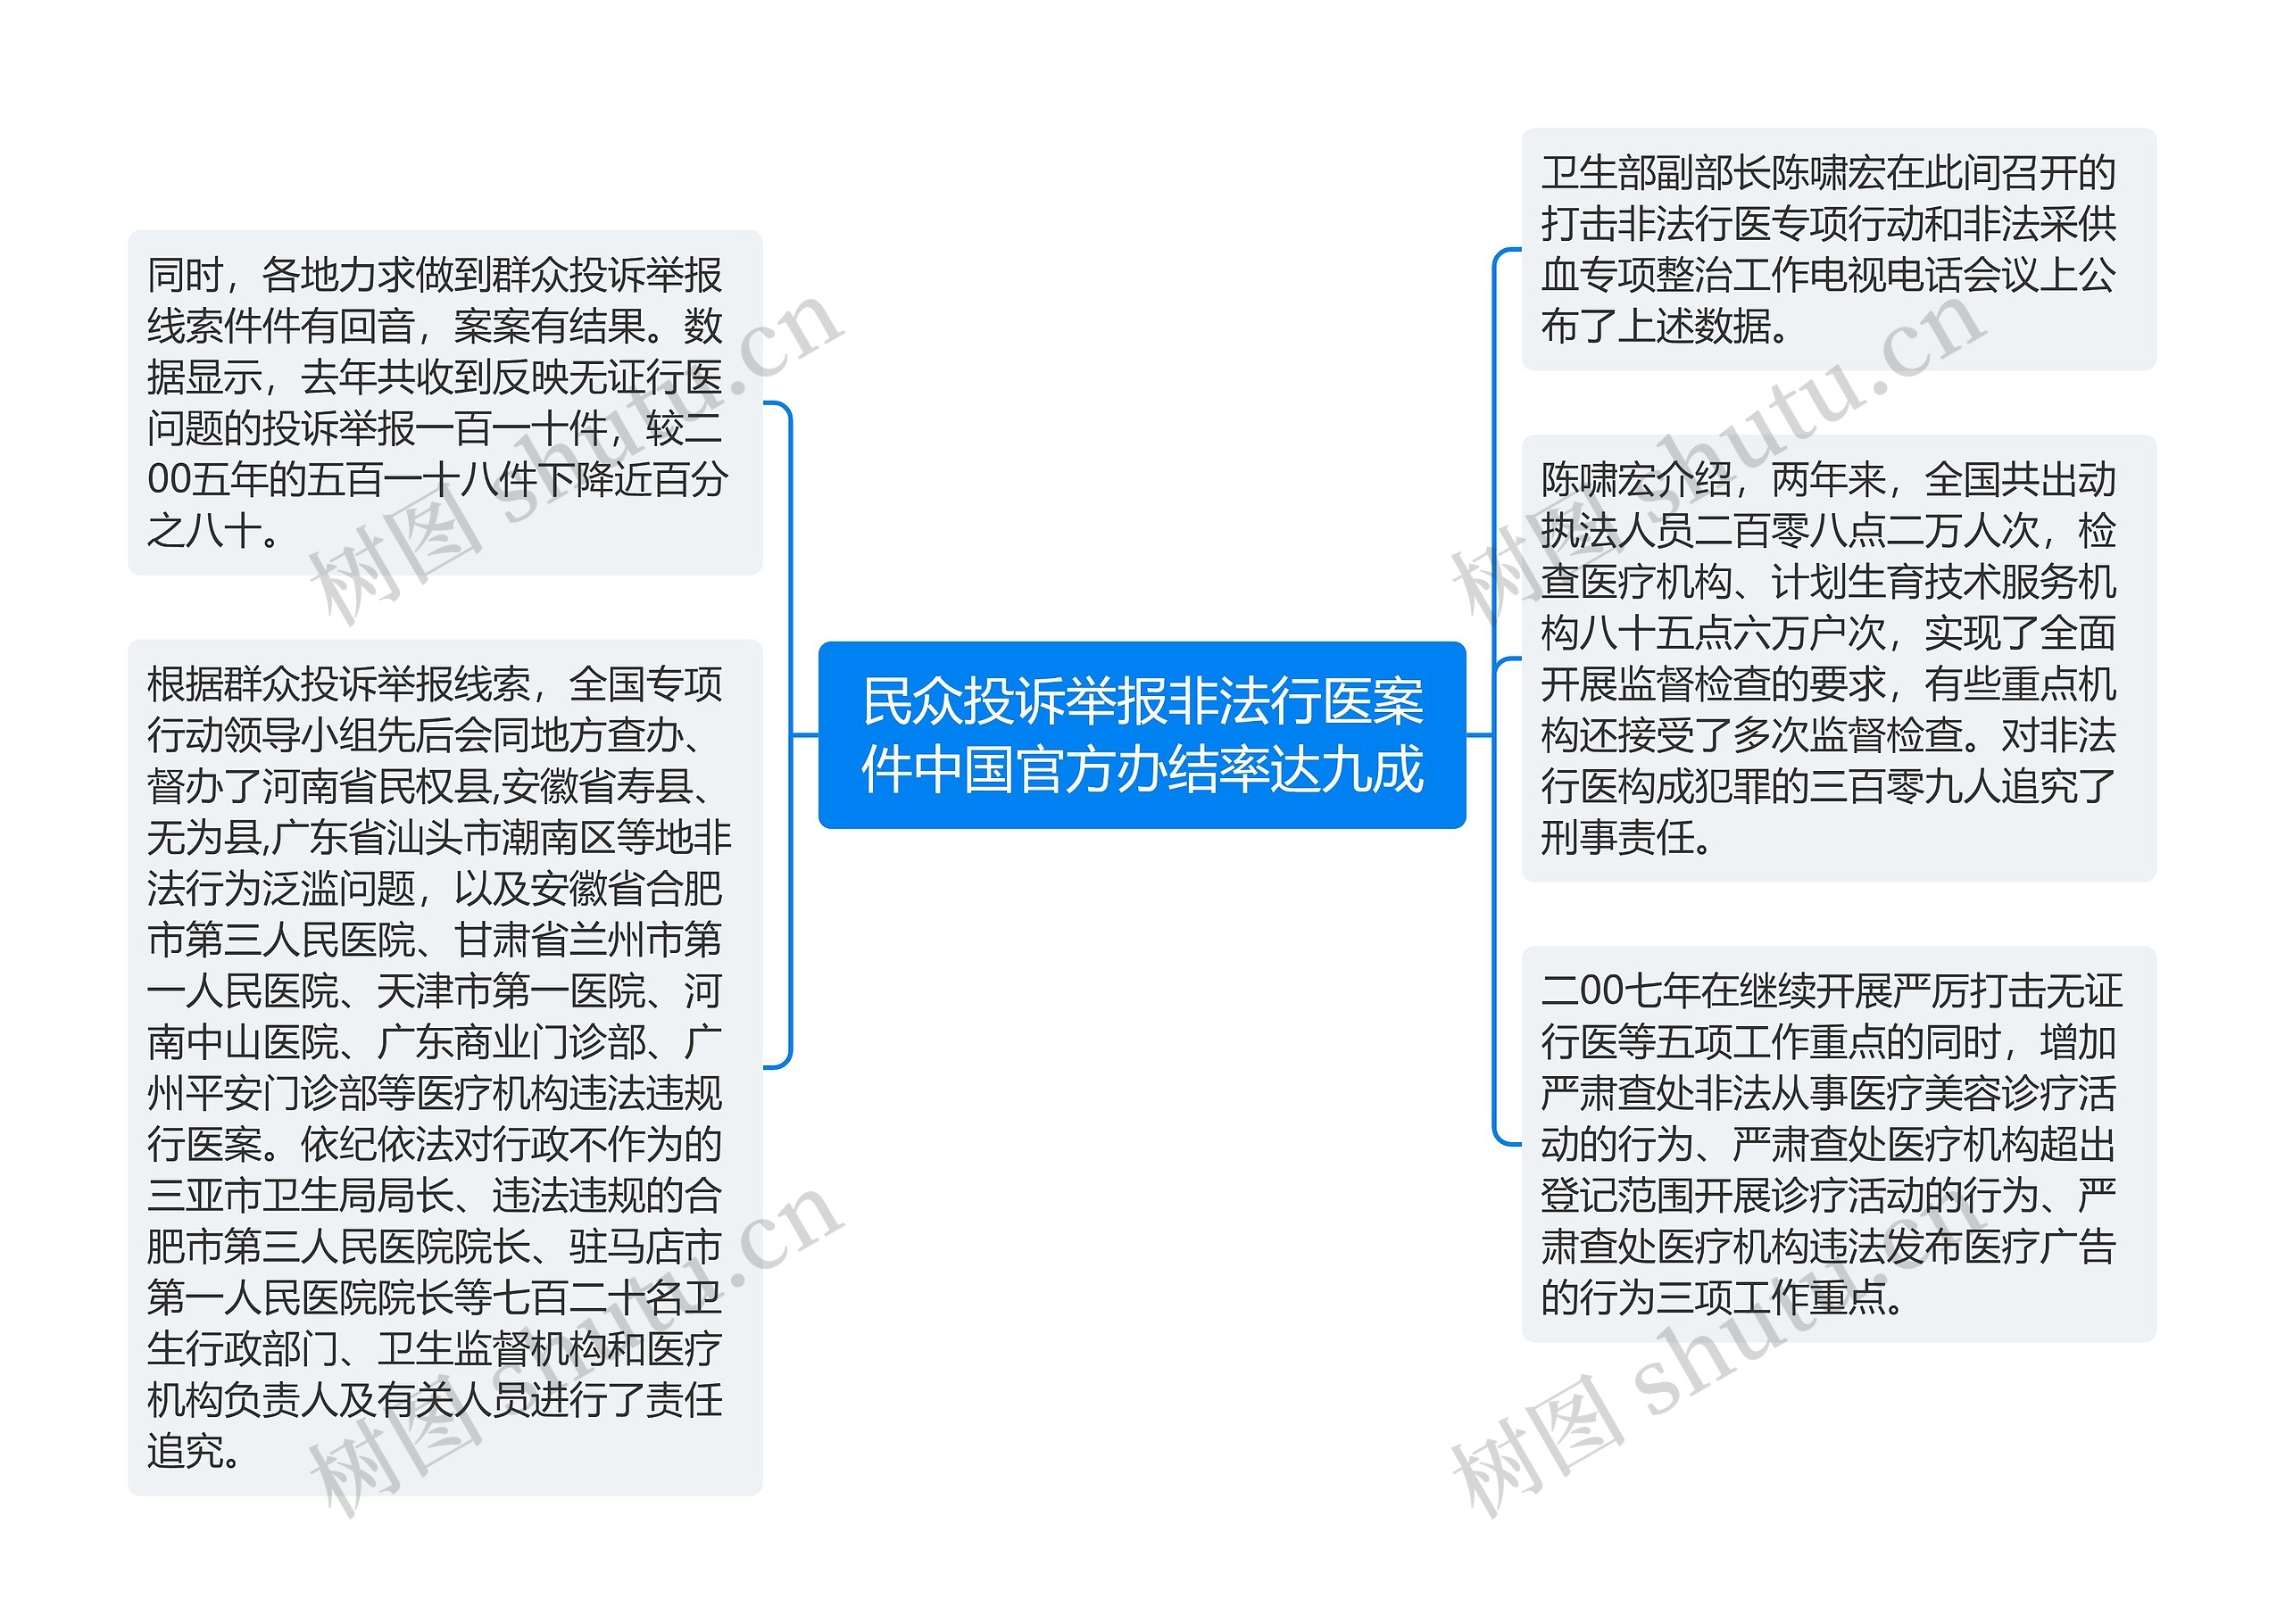 民众投诉举报非法行医案件中国官方办结率达九成思维导图